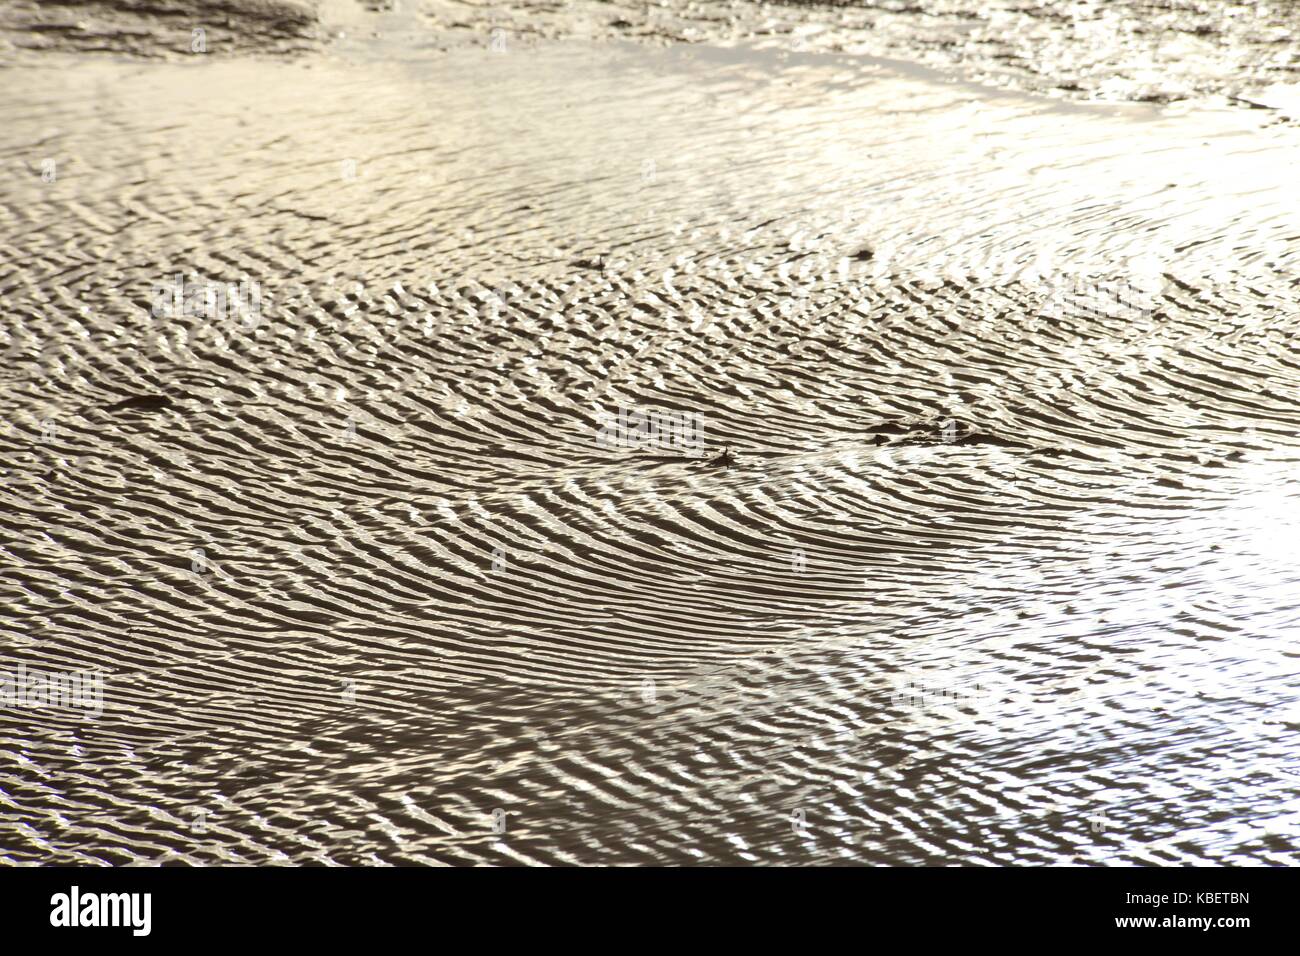 Rippelmarken im nassen Schlamm der nordfriesischen Wattenmeer in der Nähe der Hallig Oland, 22. April 2016 | Verwendung weltweit Stockfoto